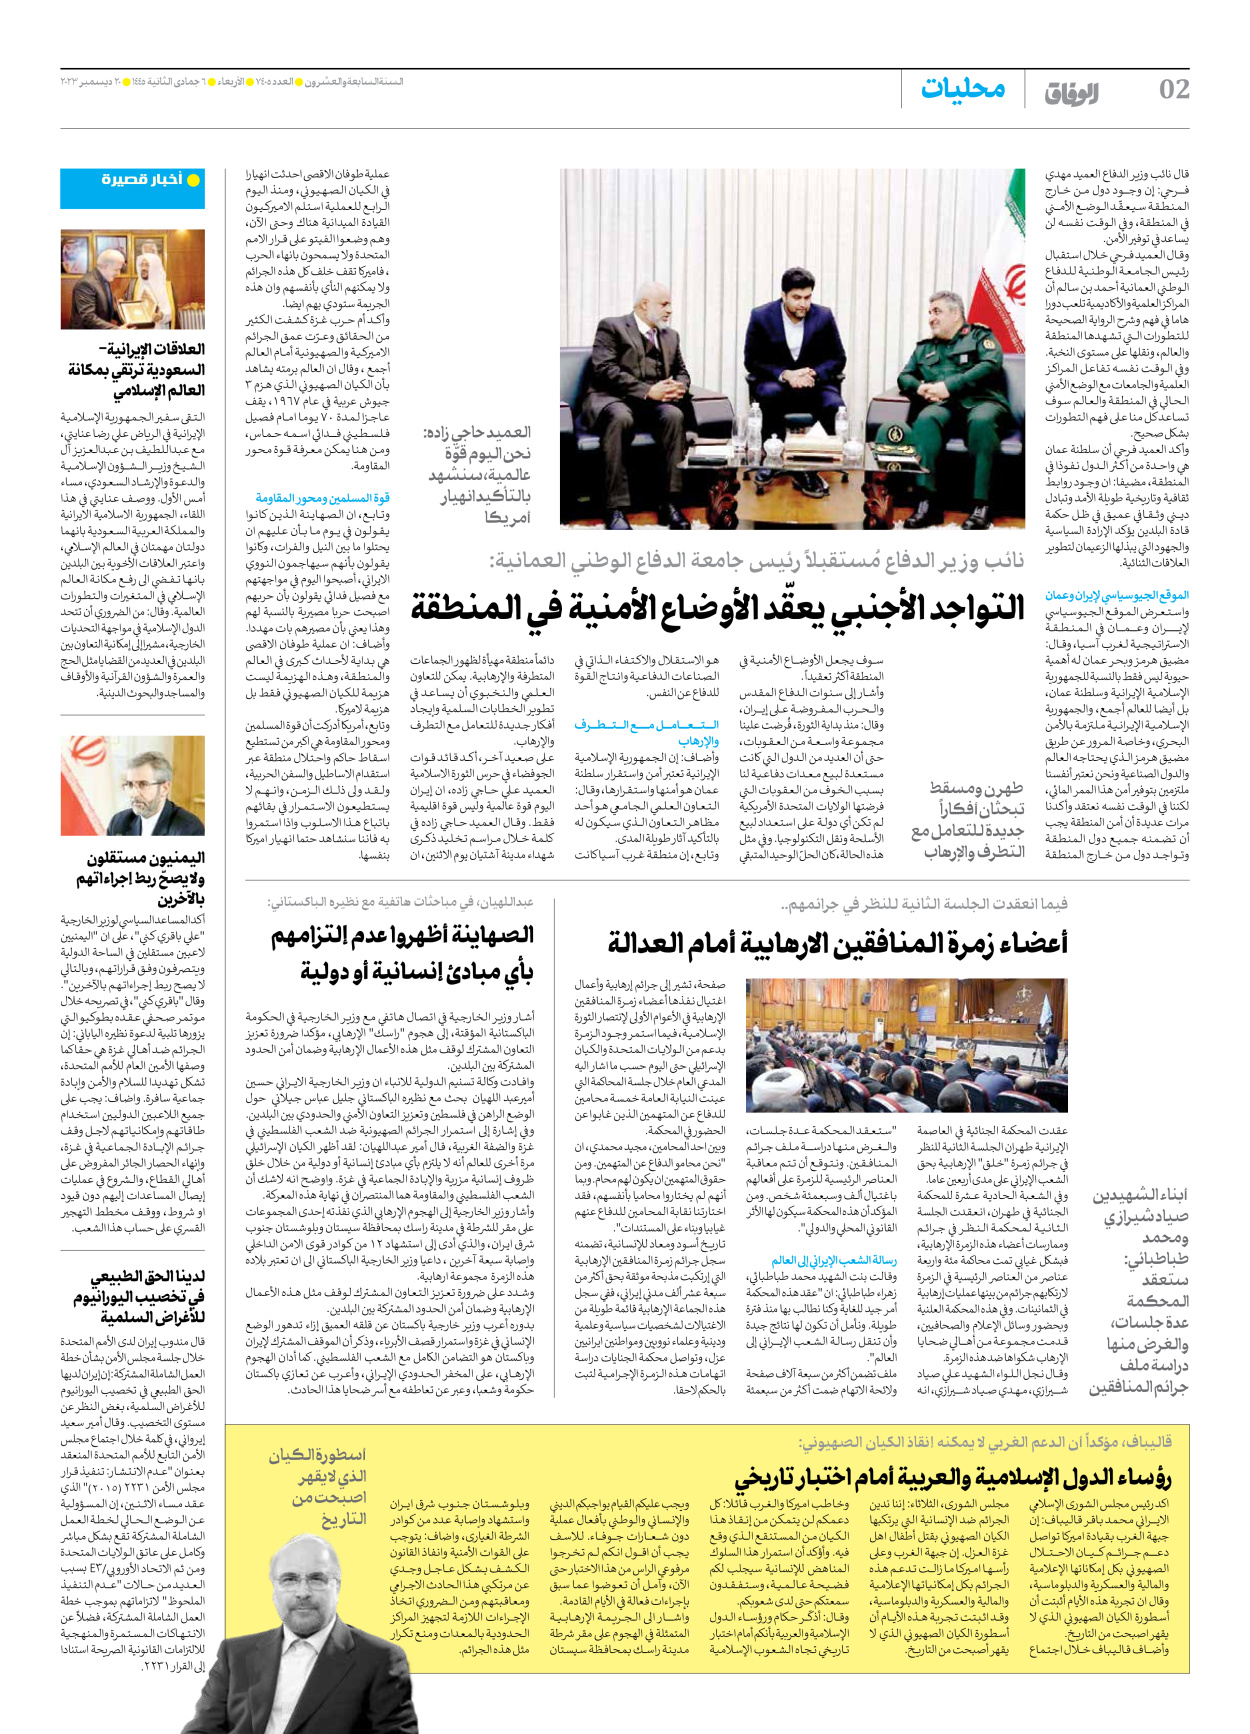 صحیفة ایران الدولیة الوفاق - العدد سبعة آلاف وأربعمائة وخمسة - ٢٠ ديسمبر ٢٠٢٣ - الصفحة ۲